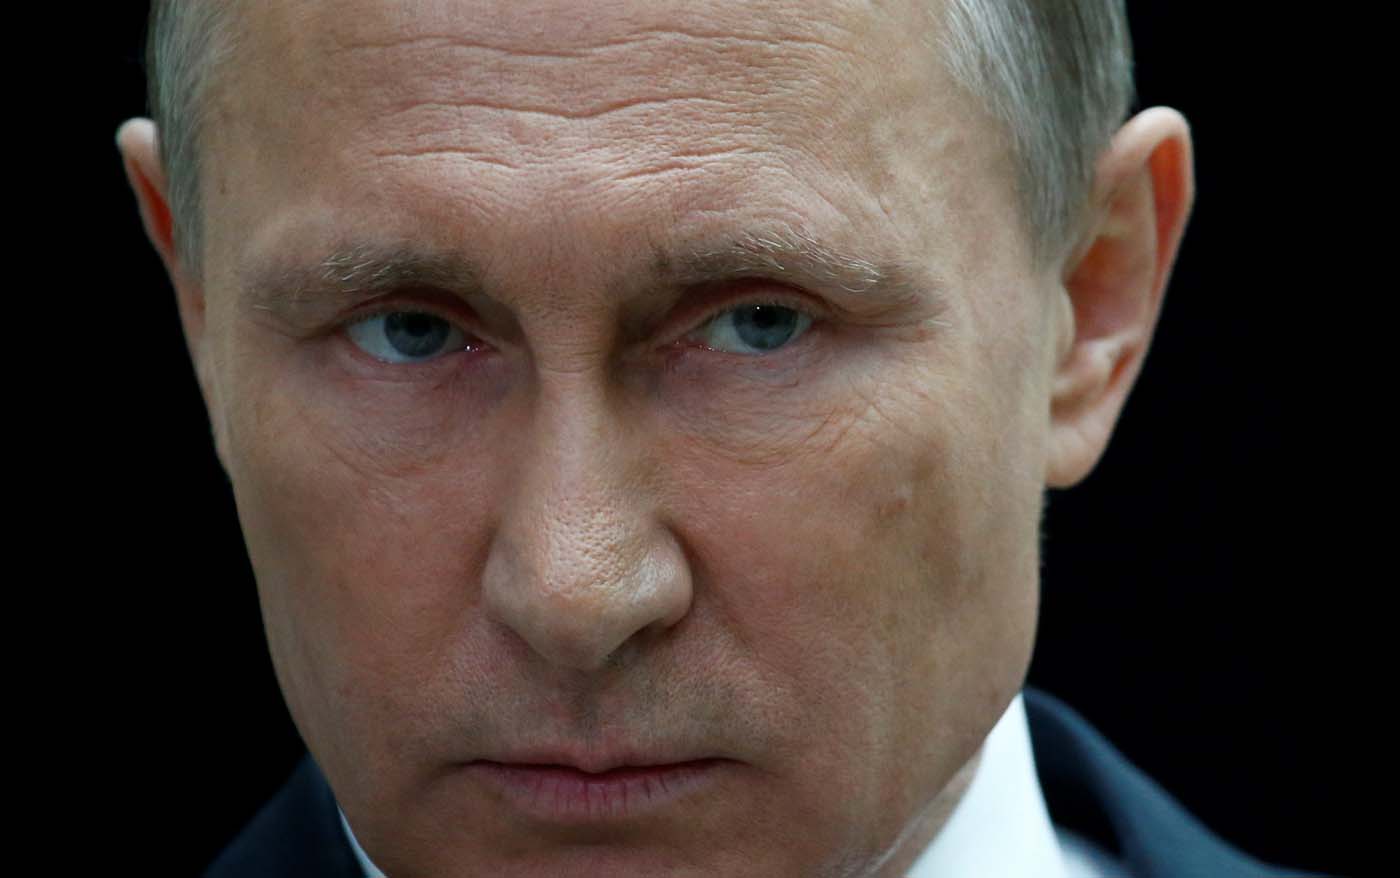 Putin comienza el lunes su cuarto mandato después de haber dirigido el país durante 18 años